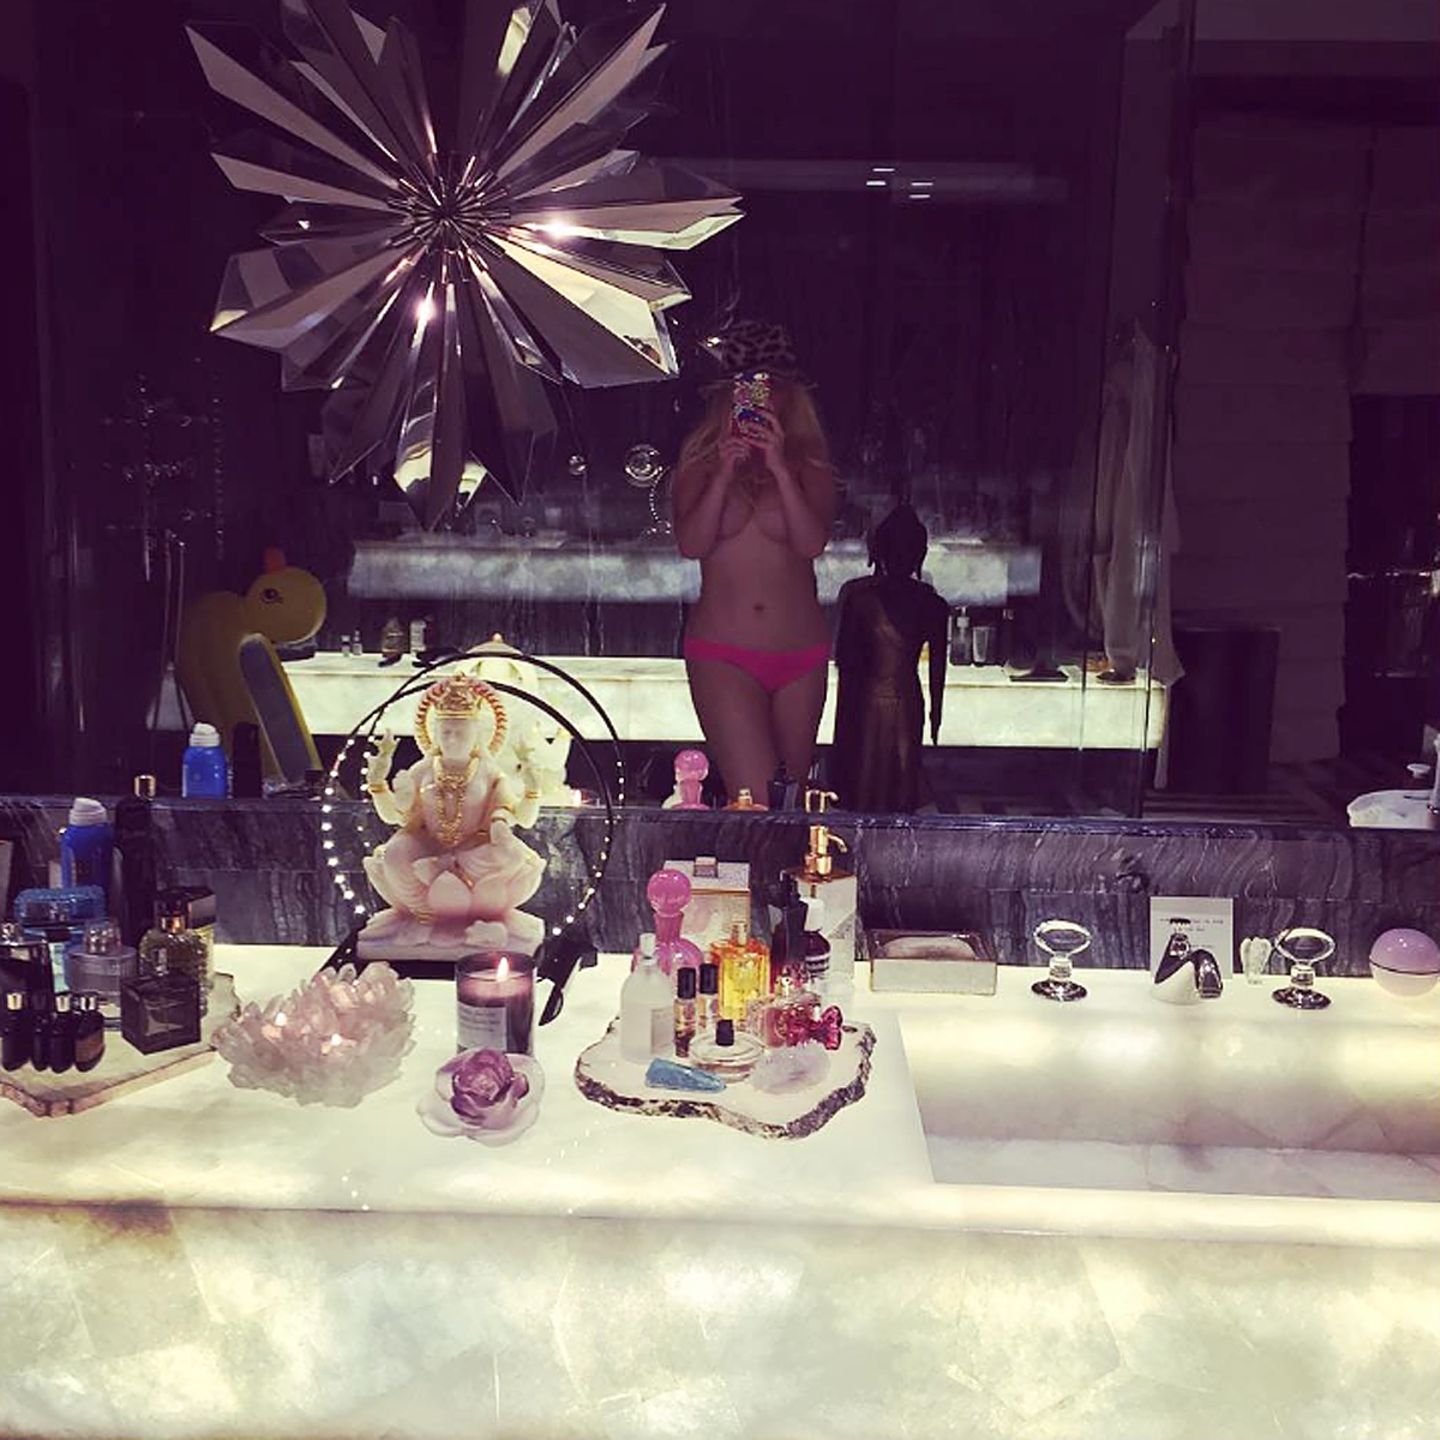 Christina Aguilera verkündigt ihren Instagram-Followern mit diesem freizügigen Selfie, dass es an der Zeit ist auch mal persönliche Dinge zu teilen. Nacktheit scheint offensichtlich für sie dazuzugehören.